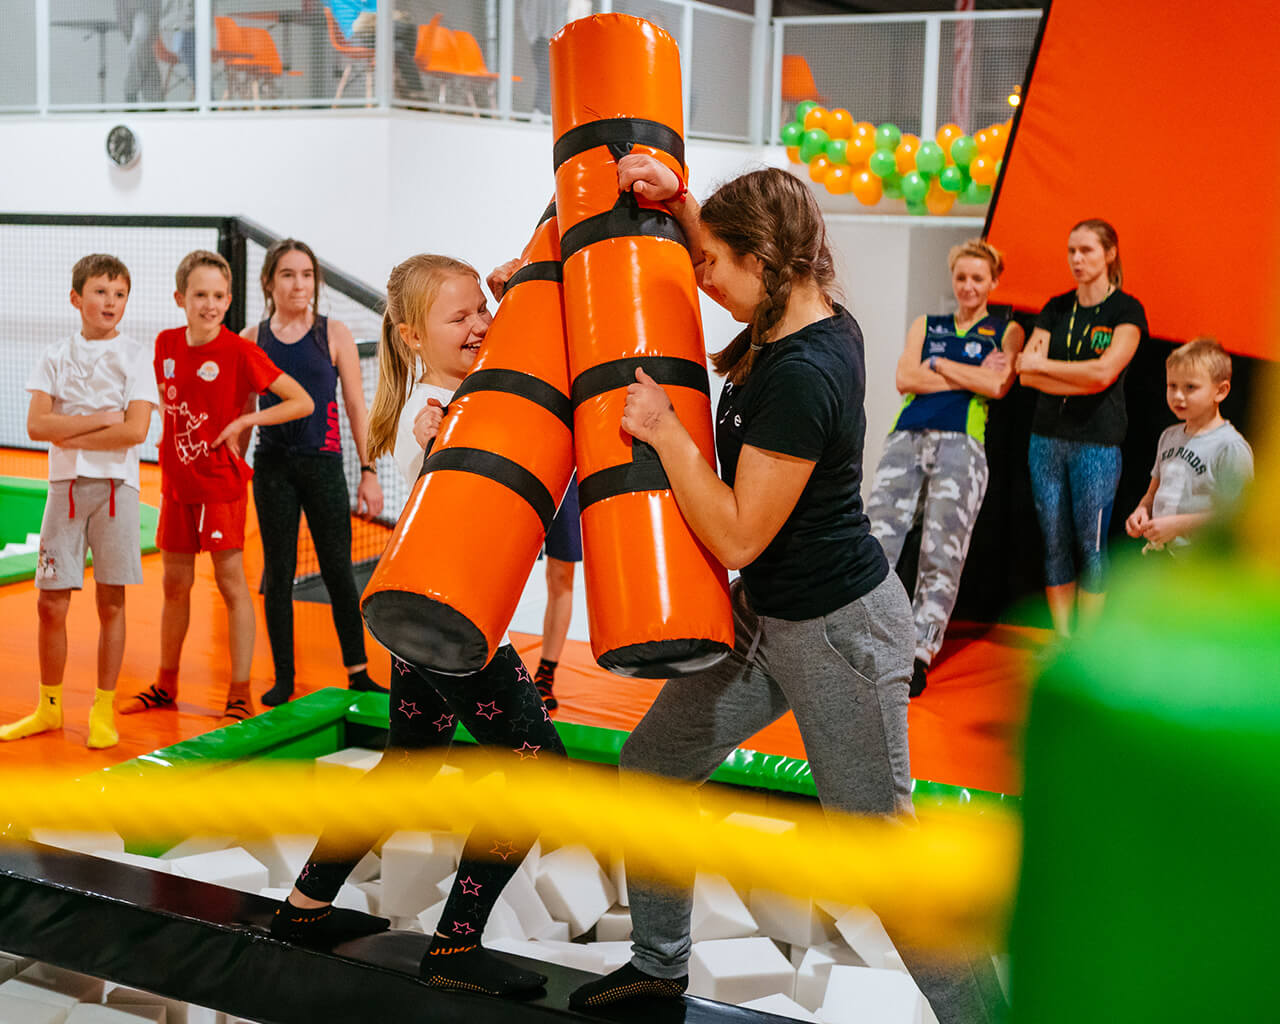 Strefa Warior - Rodzinny park trampolin i sala zabaw dla dzieci w Warszawie